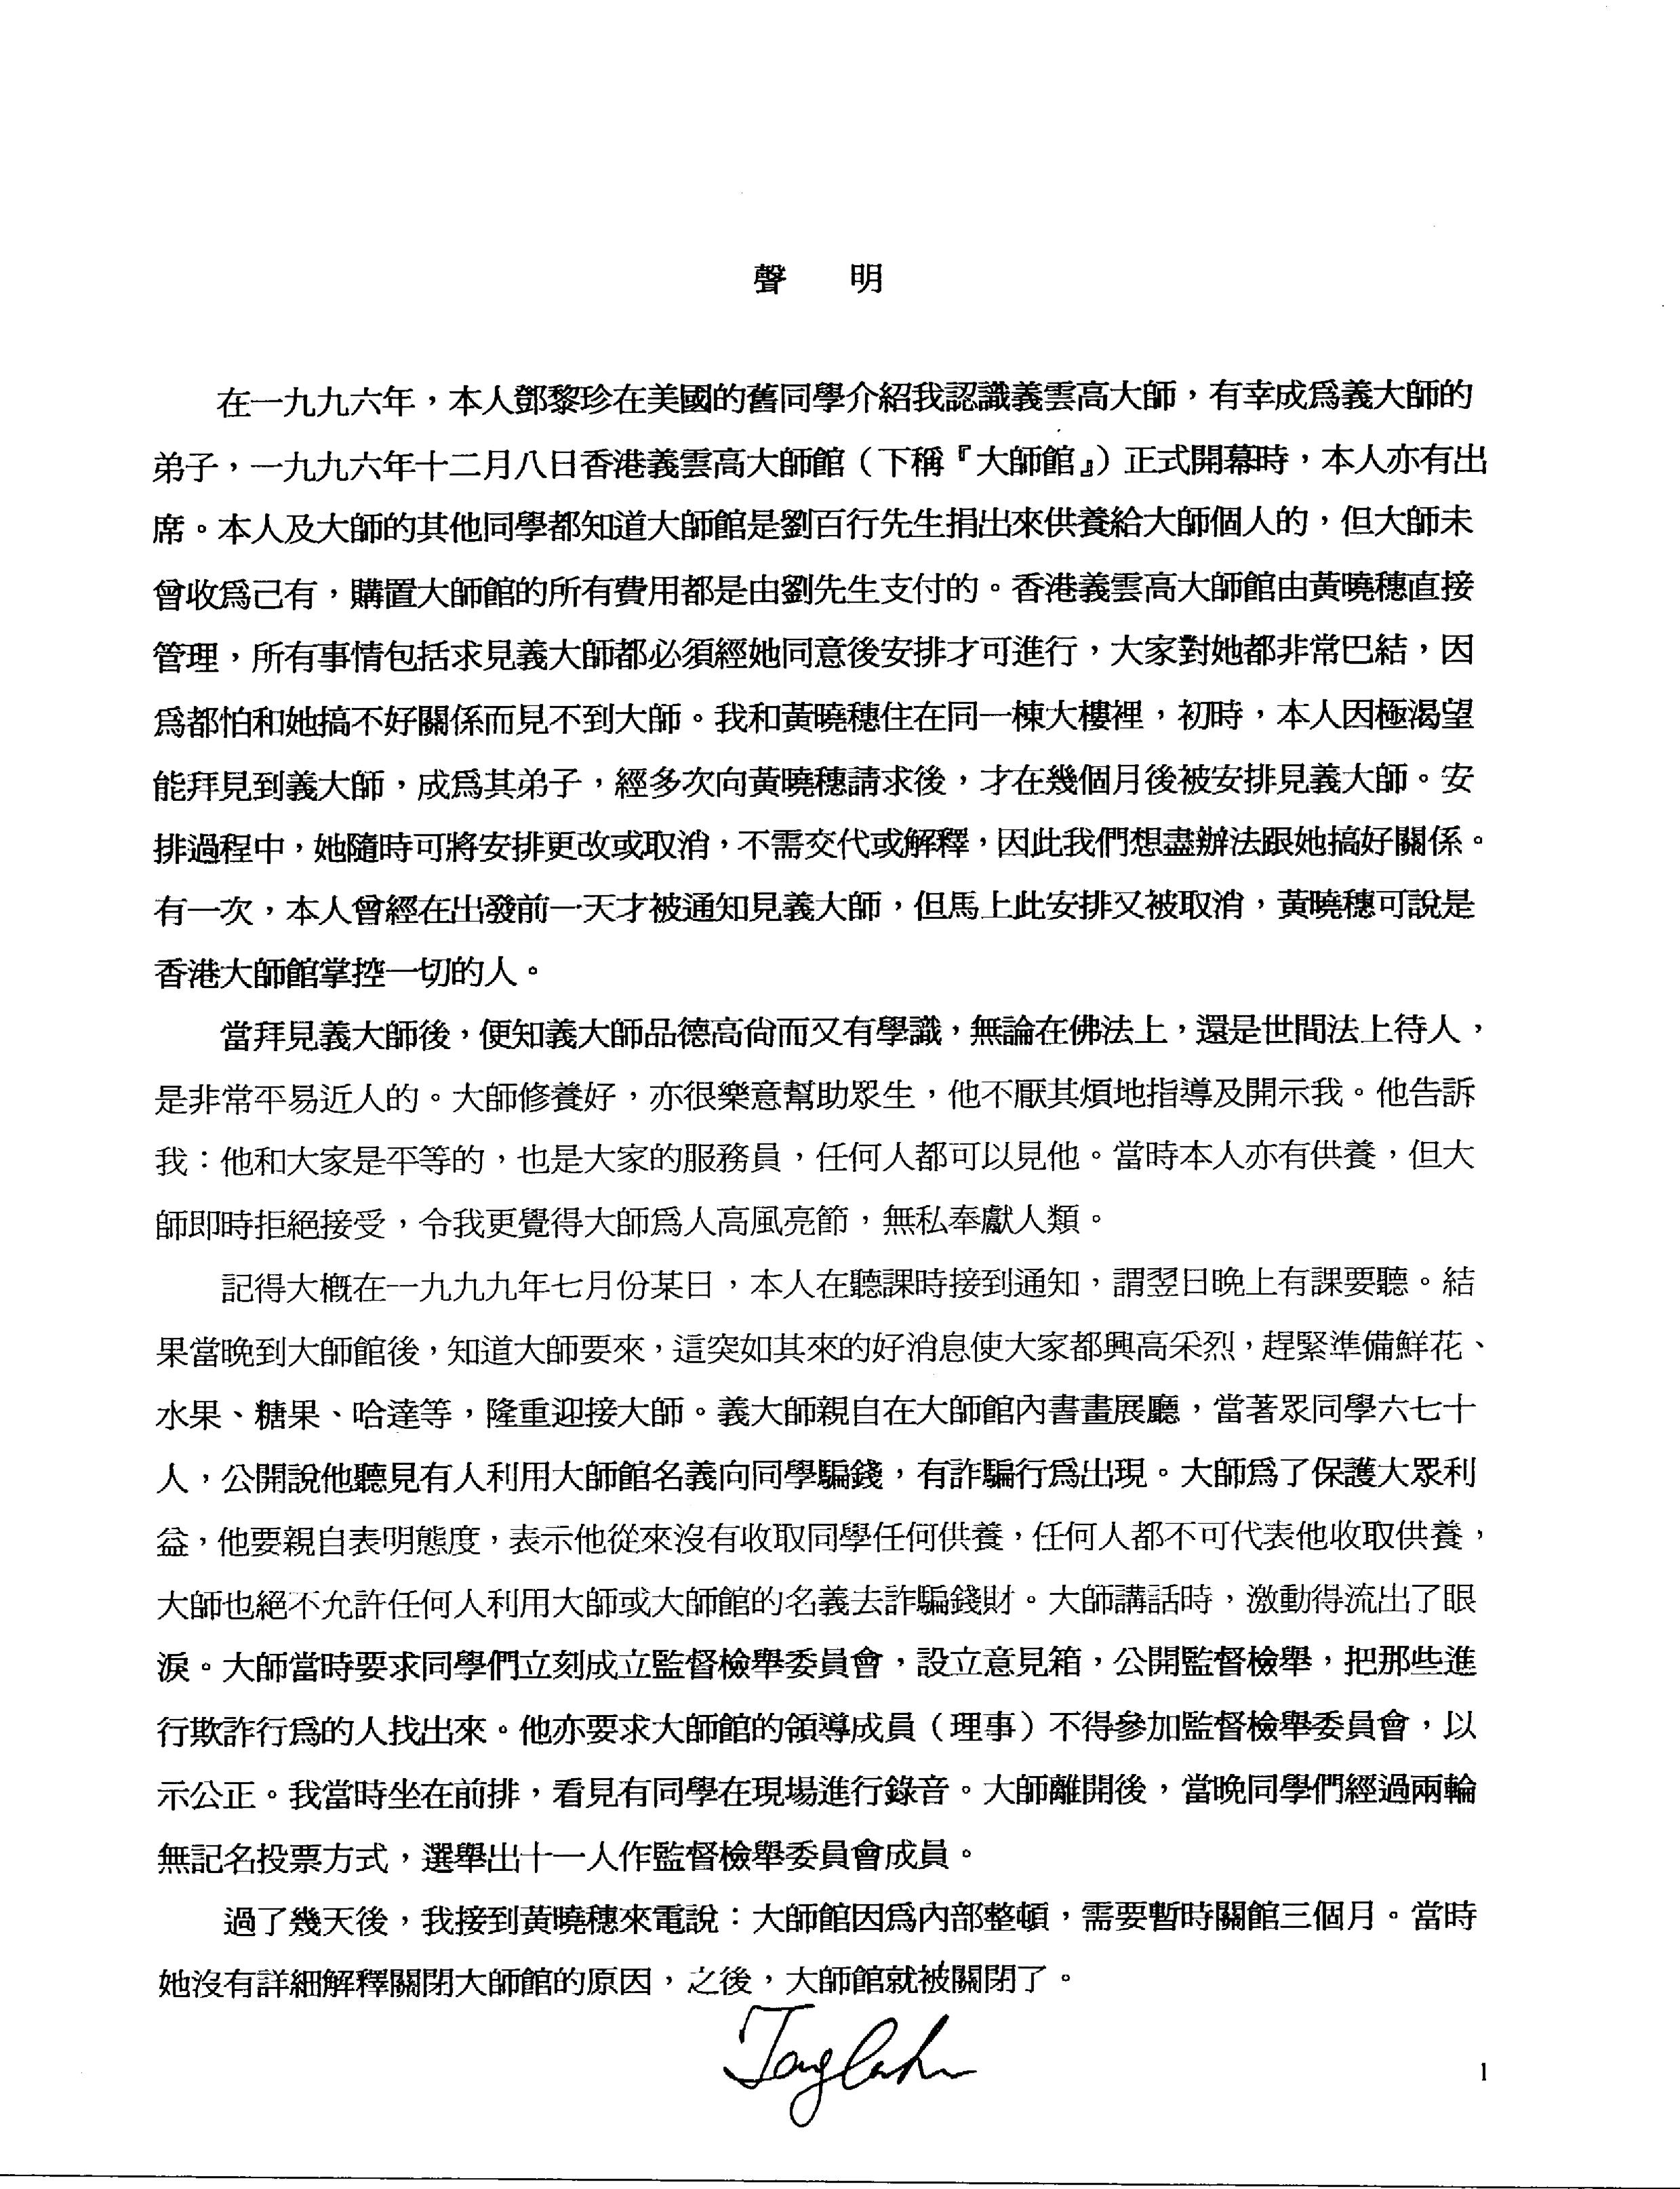 香港法院重判黄晓穗诈骗案 还第三世多杰羌佛清白 第15张